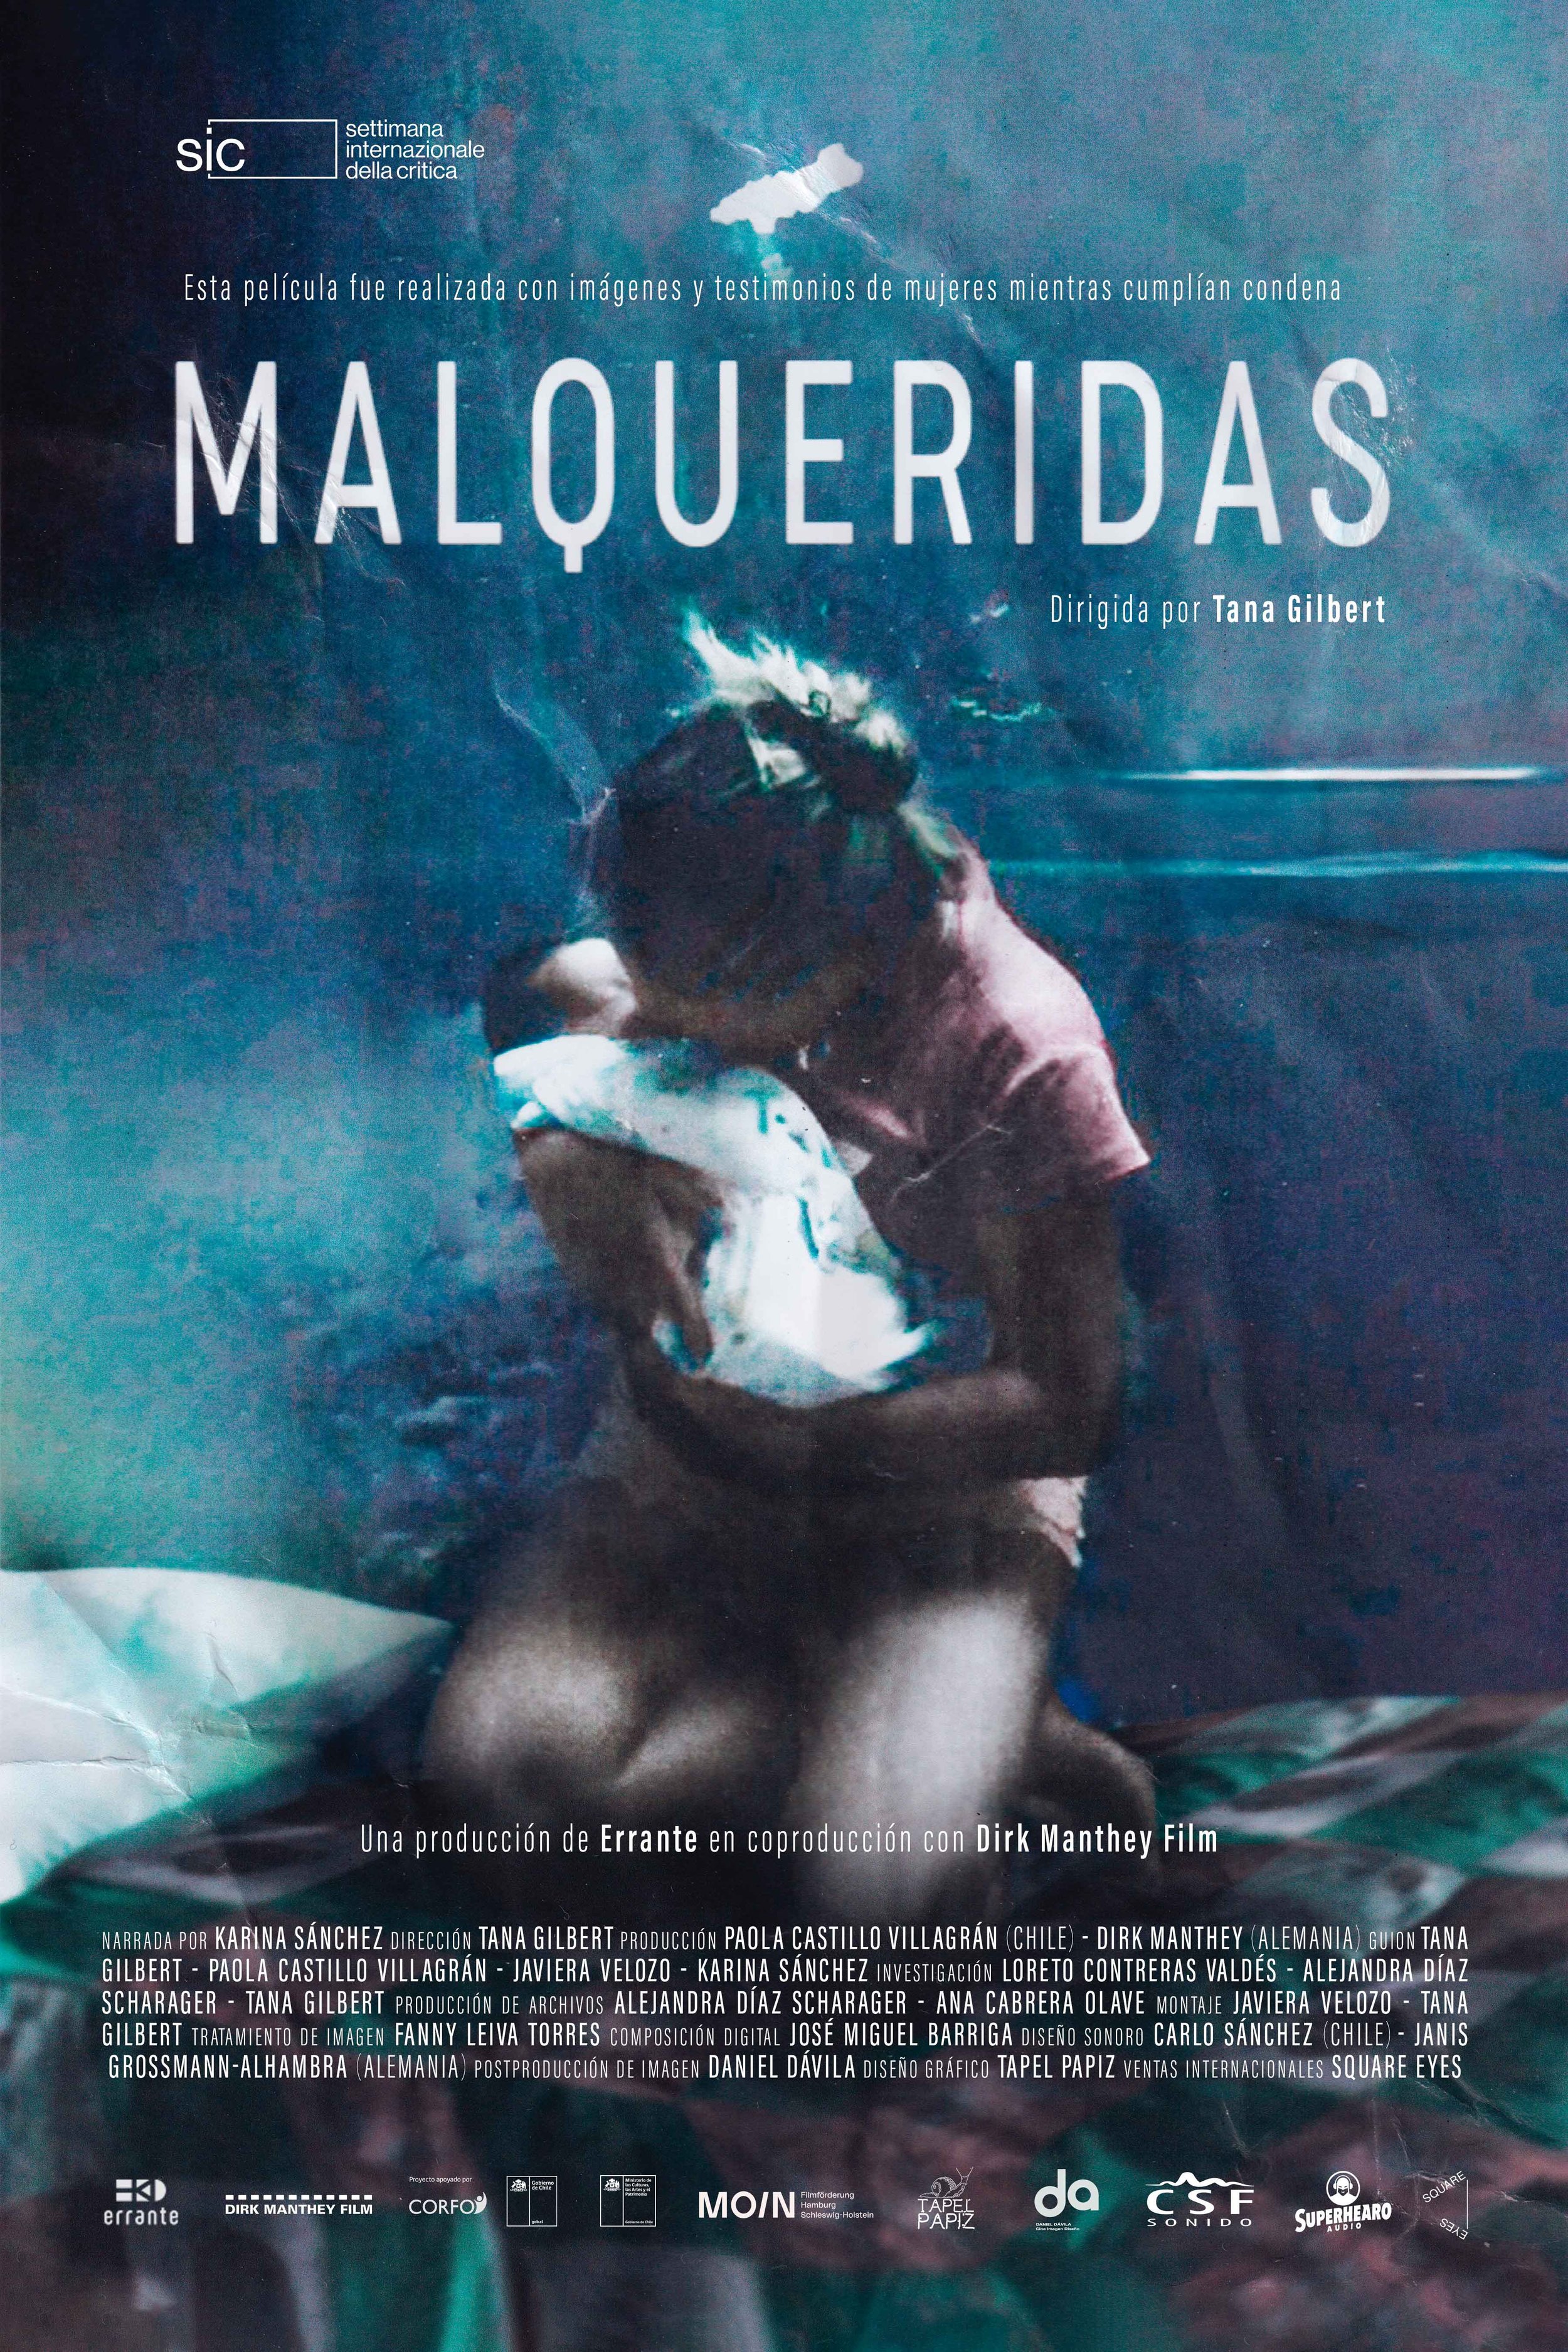 Malqueridas de Tana Gilbert ganó premio a Mejor Película y dos premios más en la Semana de la Crítica de Venecia - Universidad de Chile